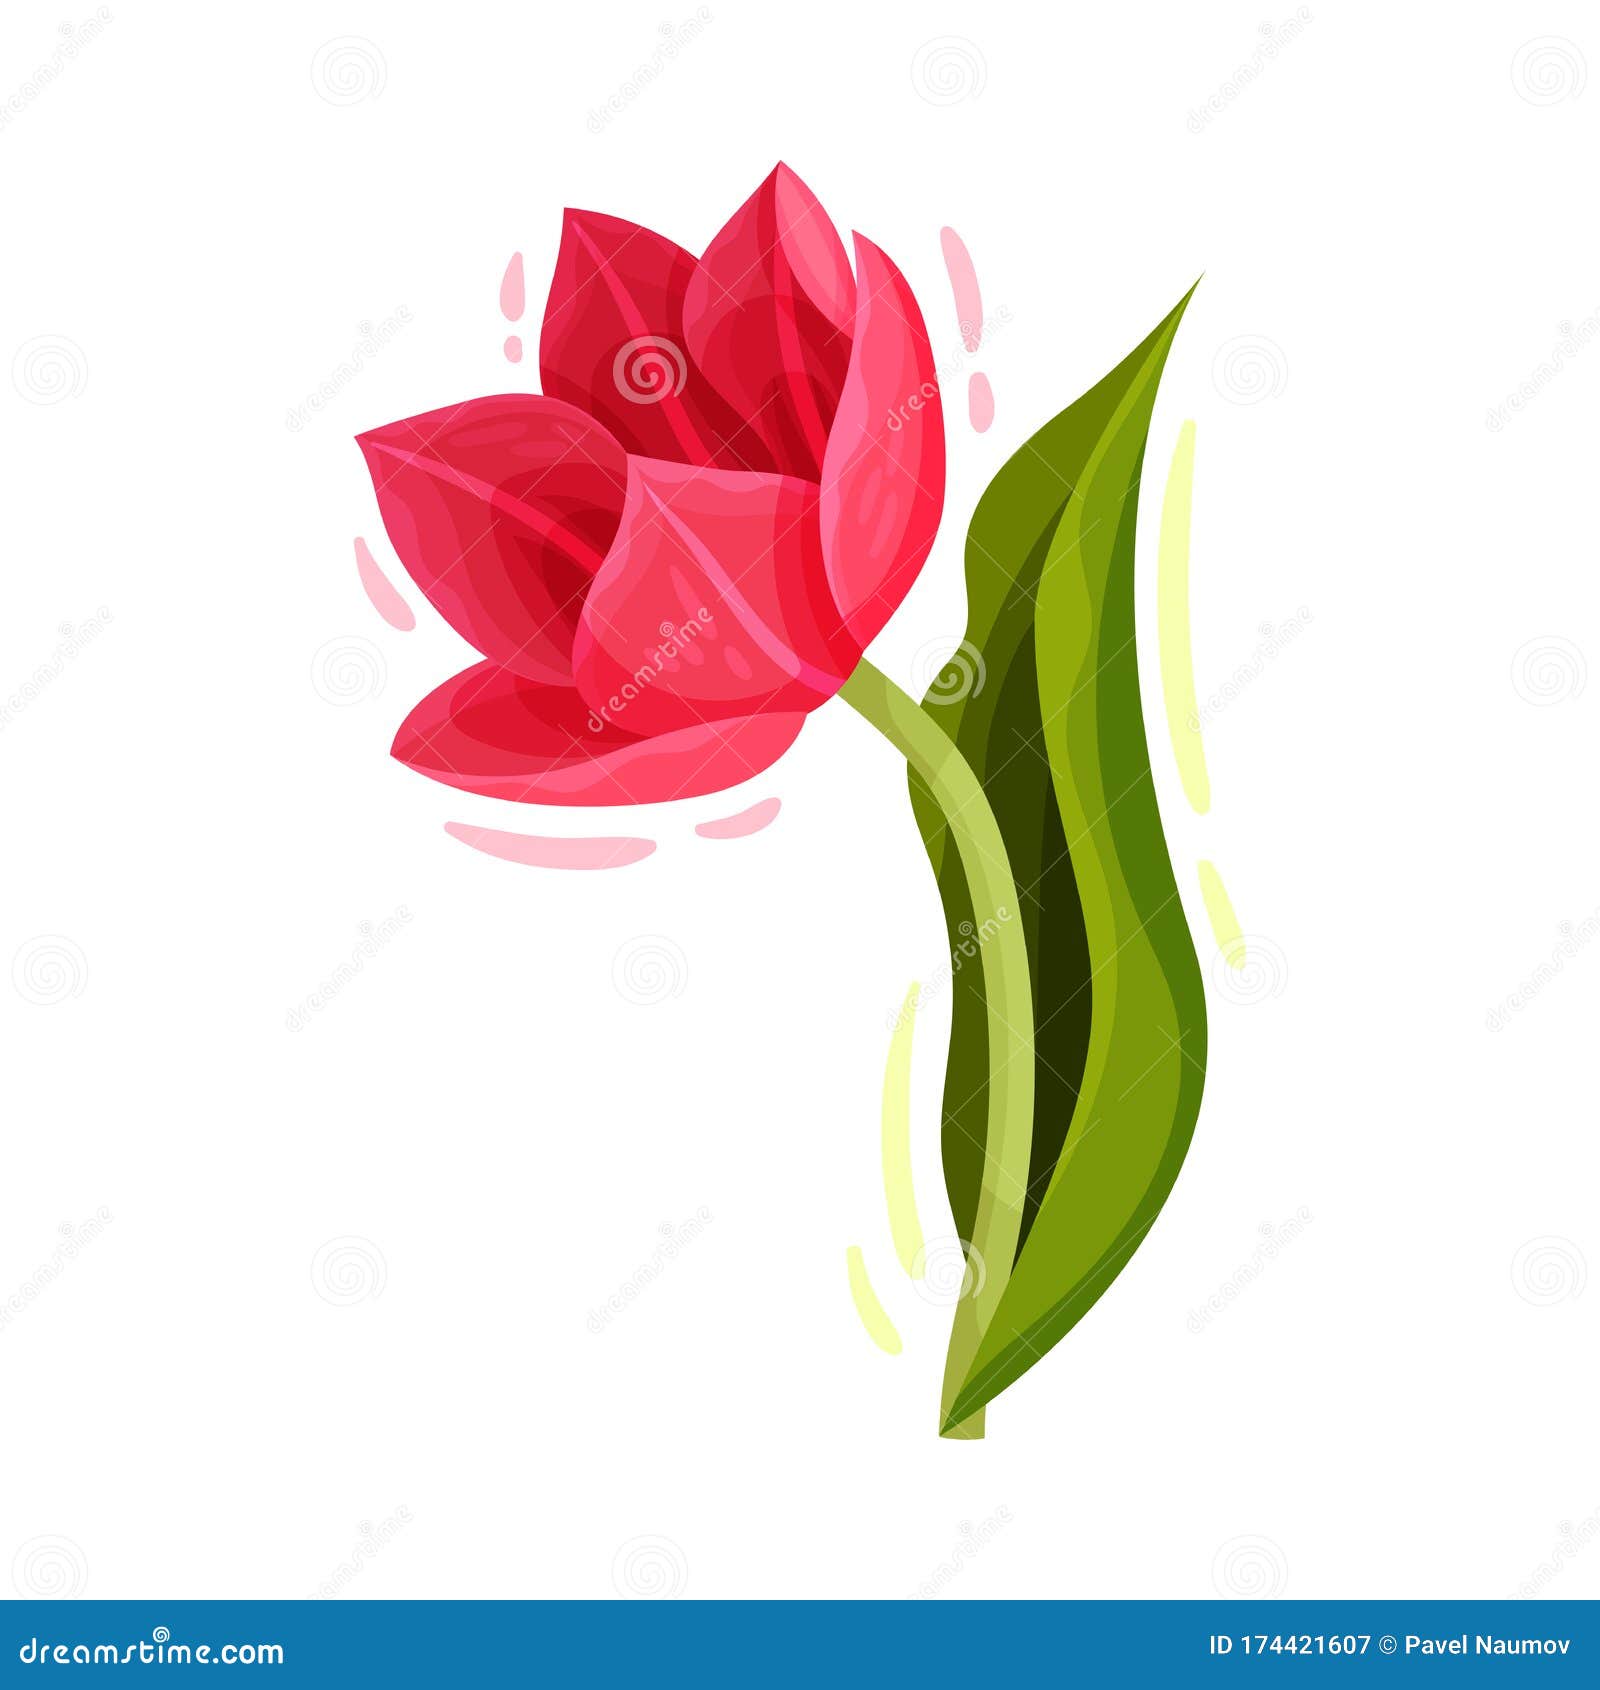 Hoa Tulip - Vẻ đẹp trang nhã trong từng cánh hoa. Hoa tulip với sắc đỏ, vàng, trắng, tím... sẽ khiến bạn thích thú và say đắm. Hãy xem ảnh liên quan để cảm nhận vẻ đẹp tinh tế của hoa tulip.